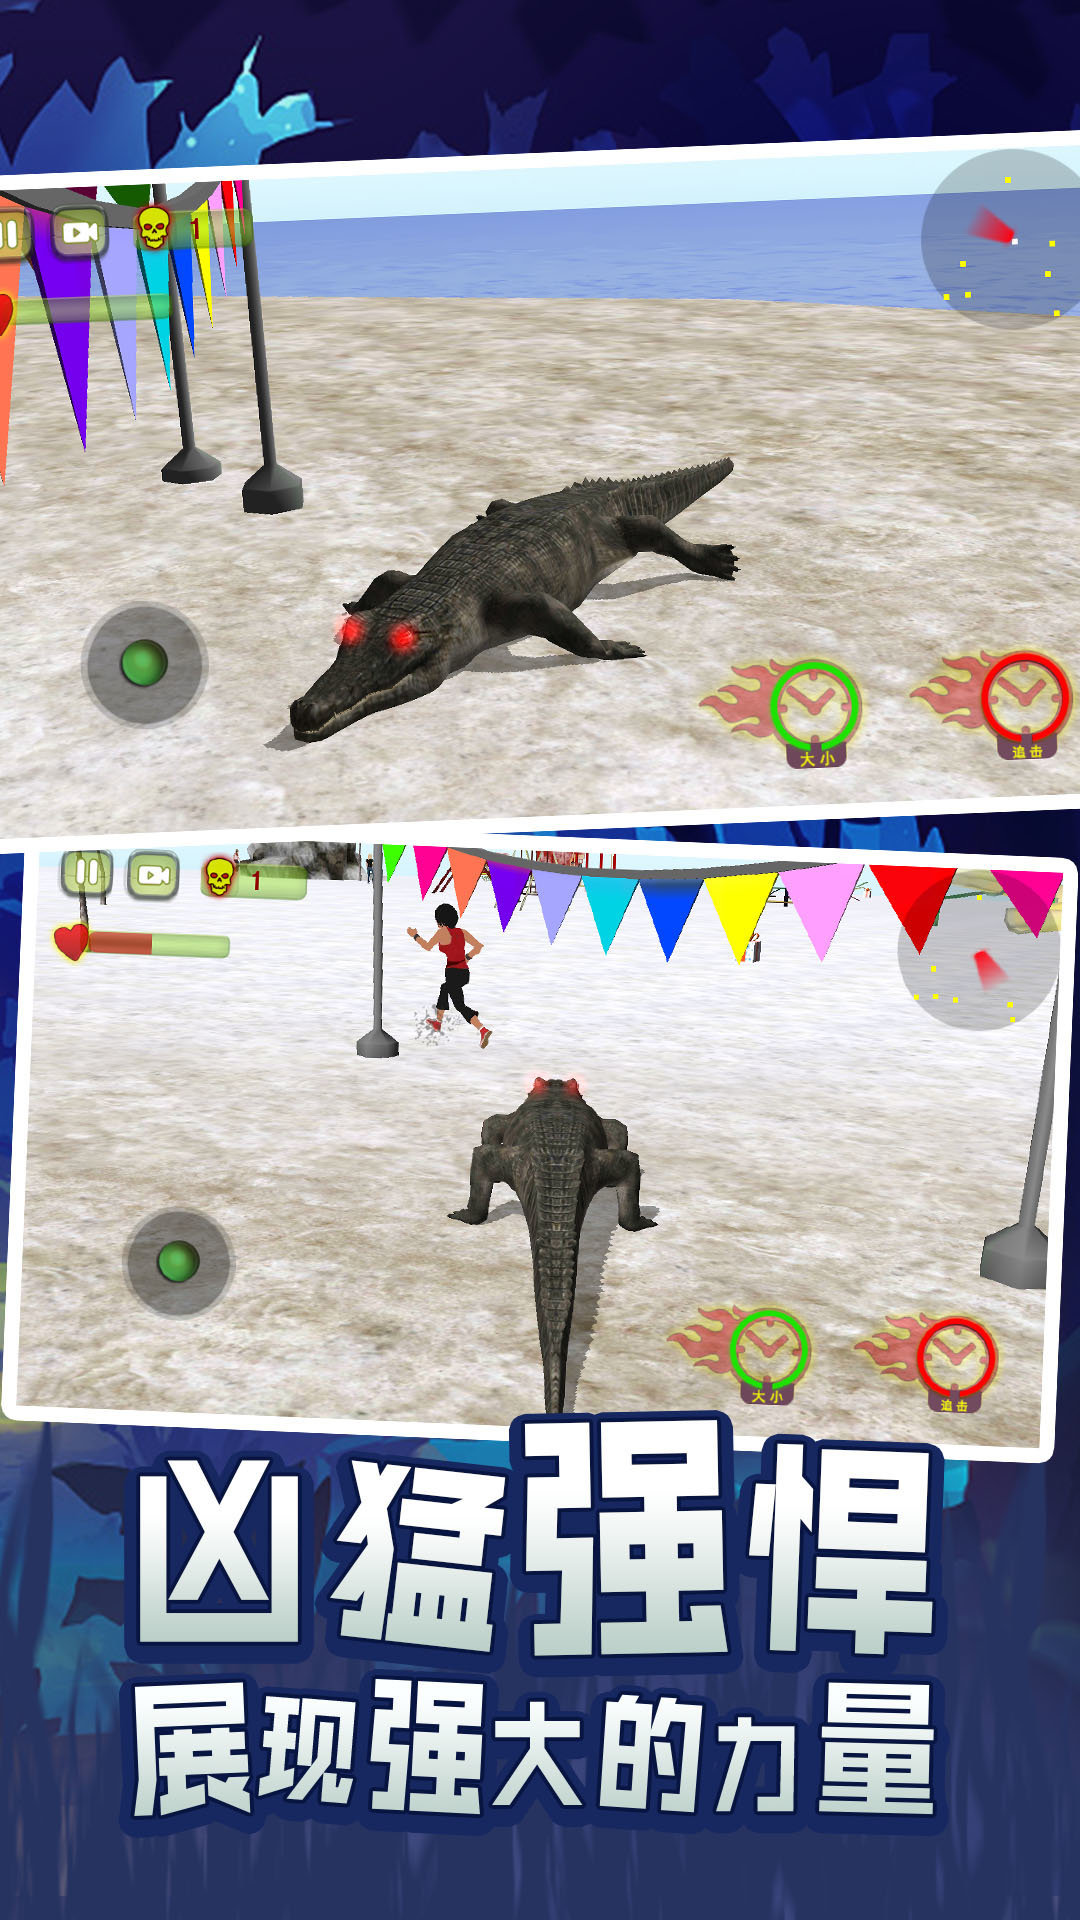 鳄鱼游戏在线_手机单机游戏鳄鱼_鳄鱼游戏ftp